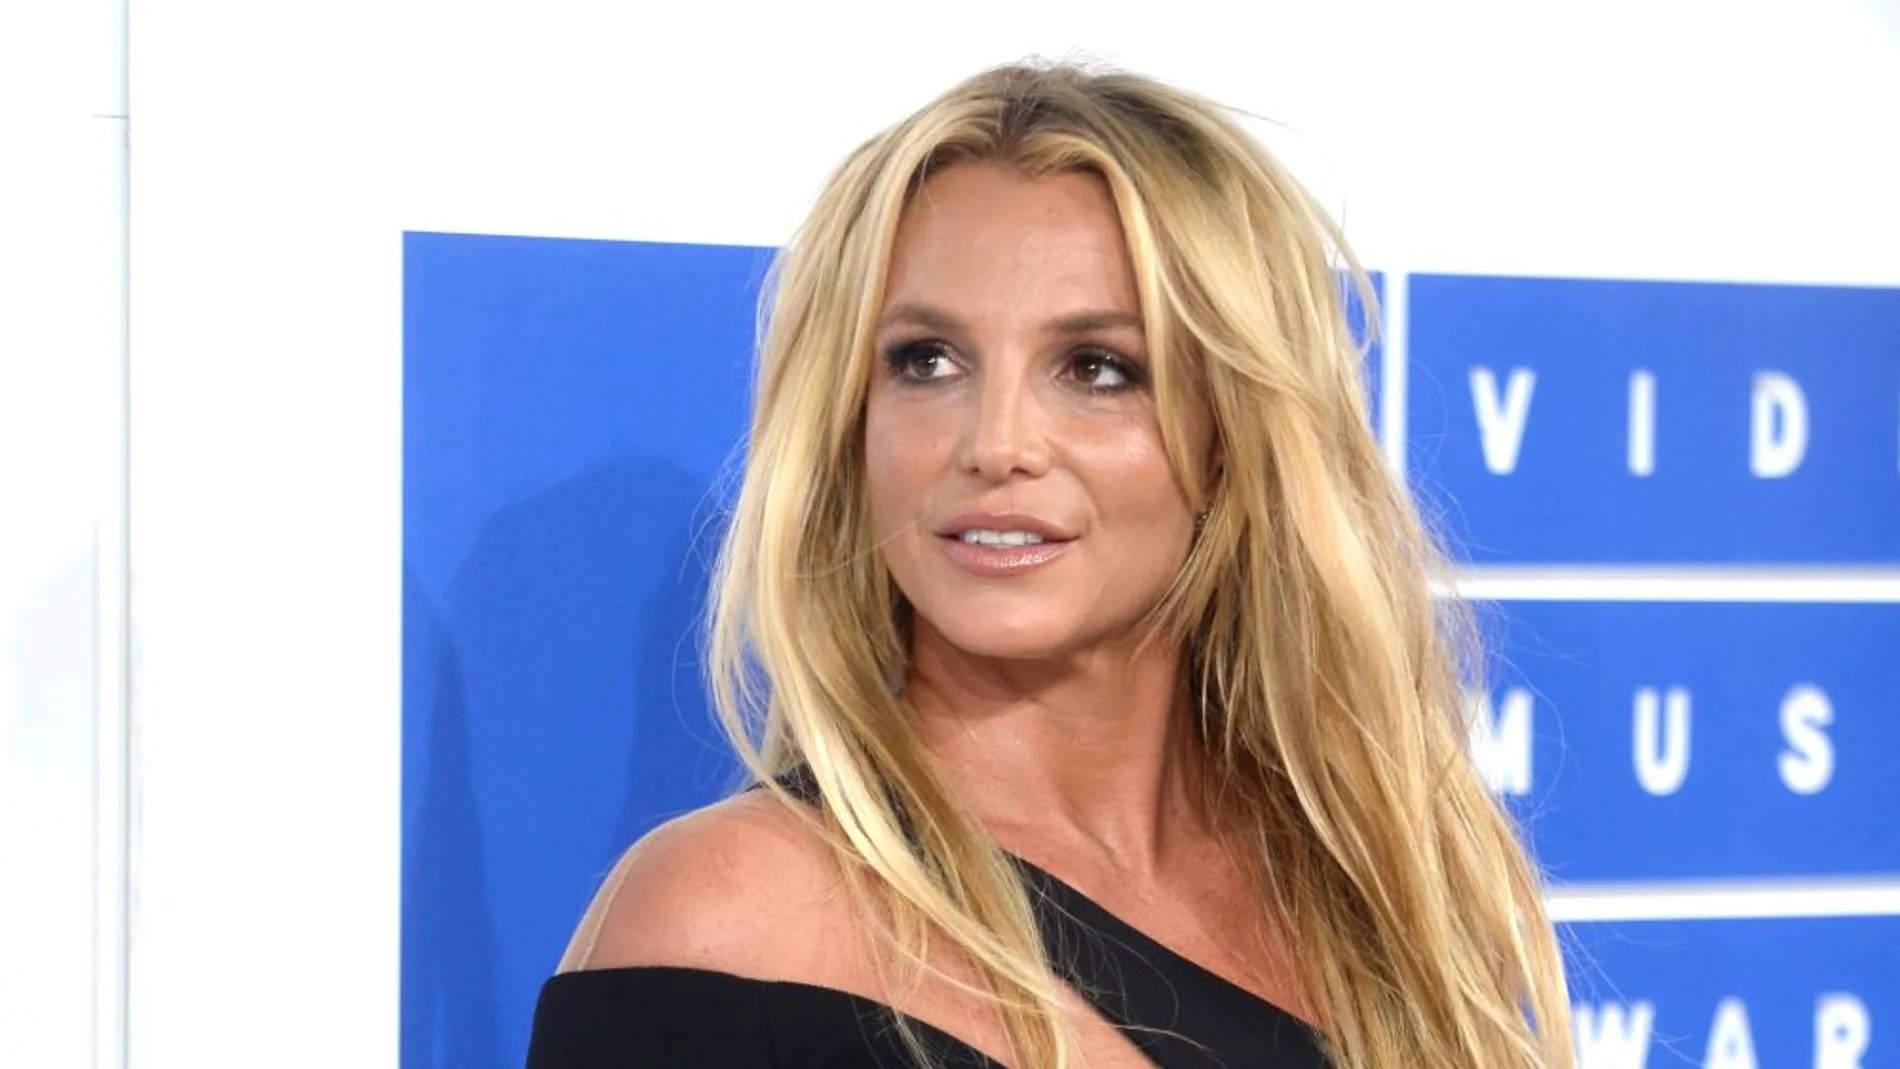 Britney Spears lo contará todo en sus memorias por 13 millones de euros